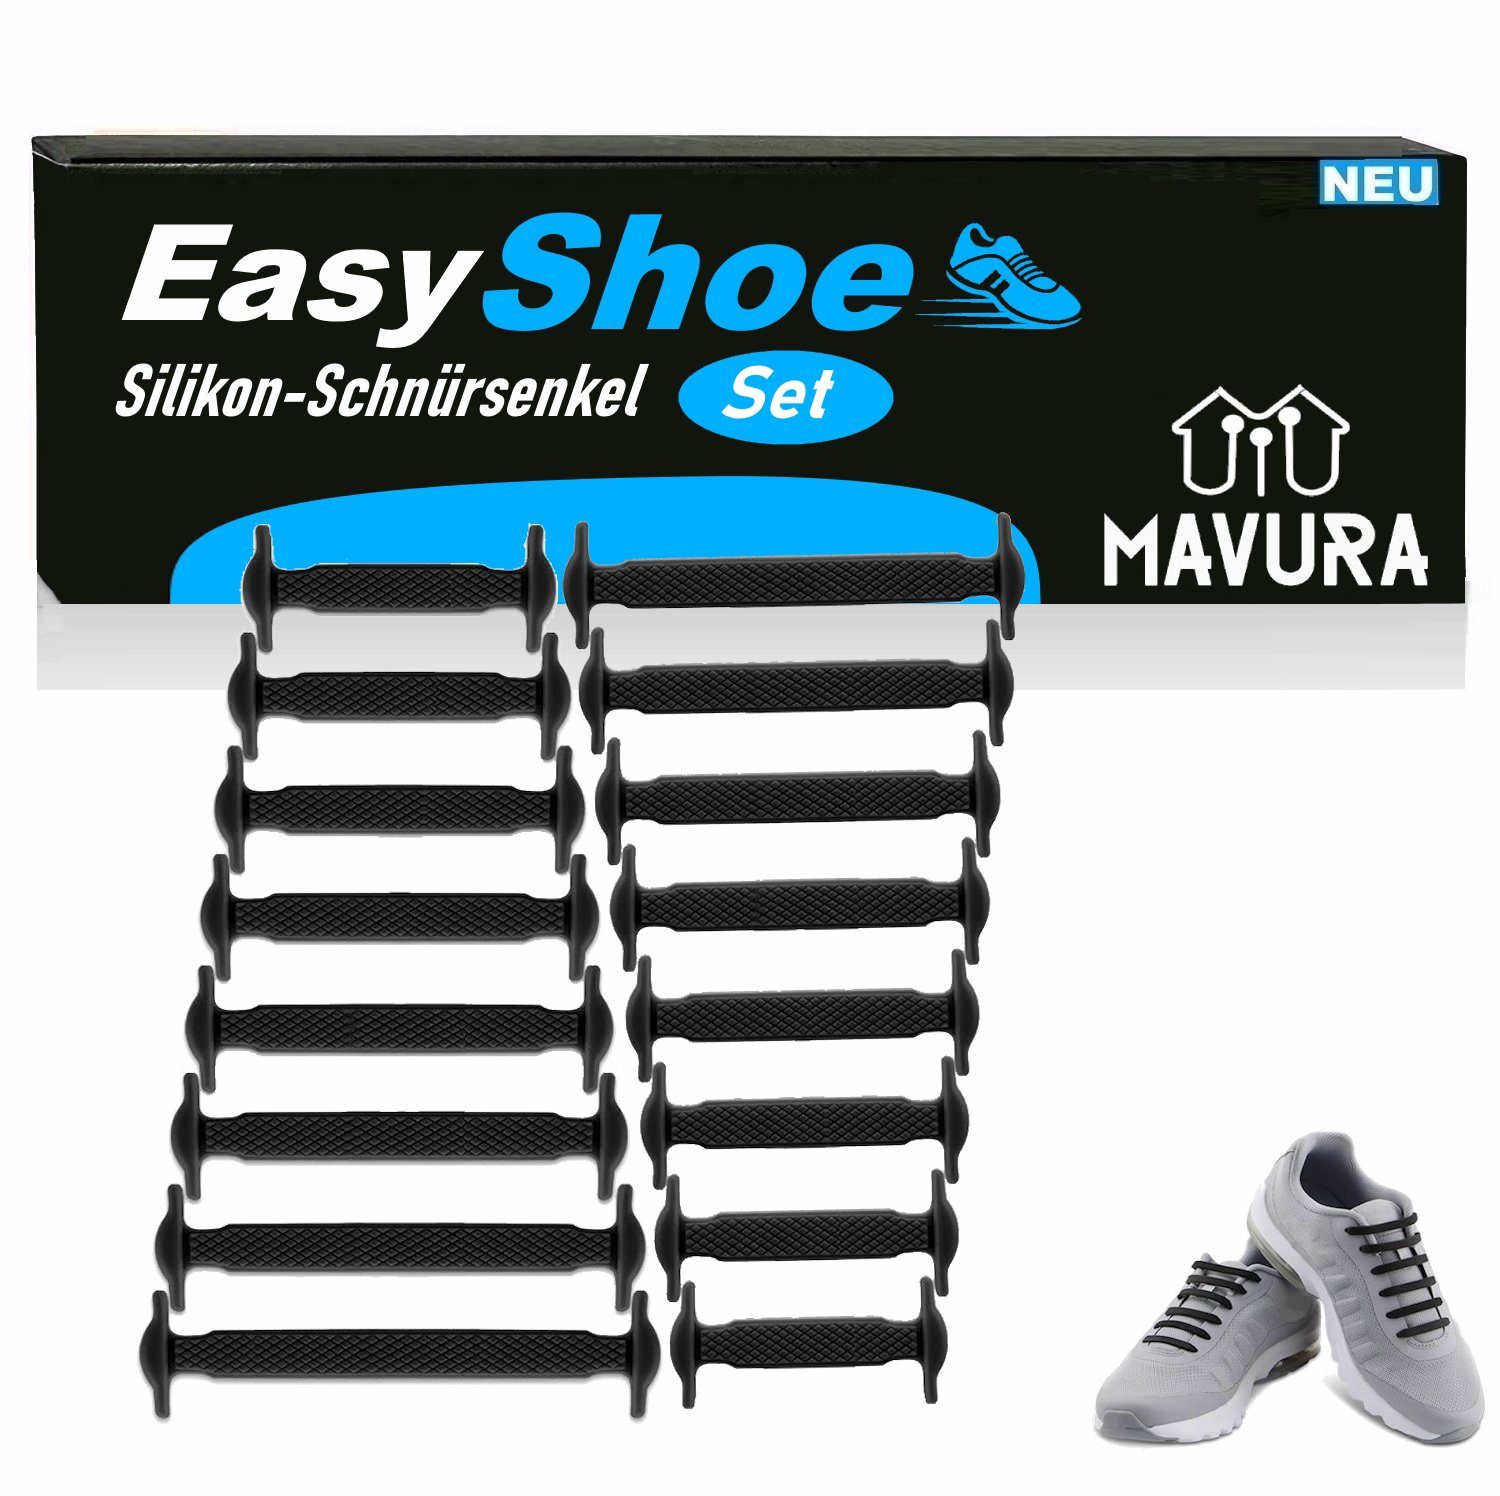 16-teilig ohne Schuh binden Silikon Set Schnürsenkel Schnellverschluss Schnürsenkel Bänder Gummi MAVURA Elastische EasyShoe Silikonschnürsenkel,